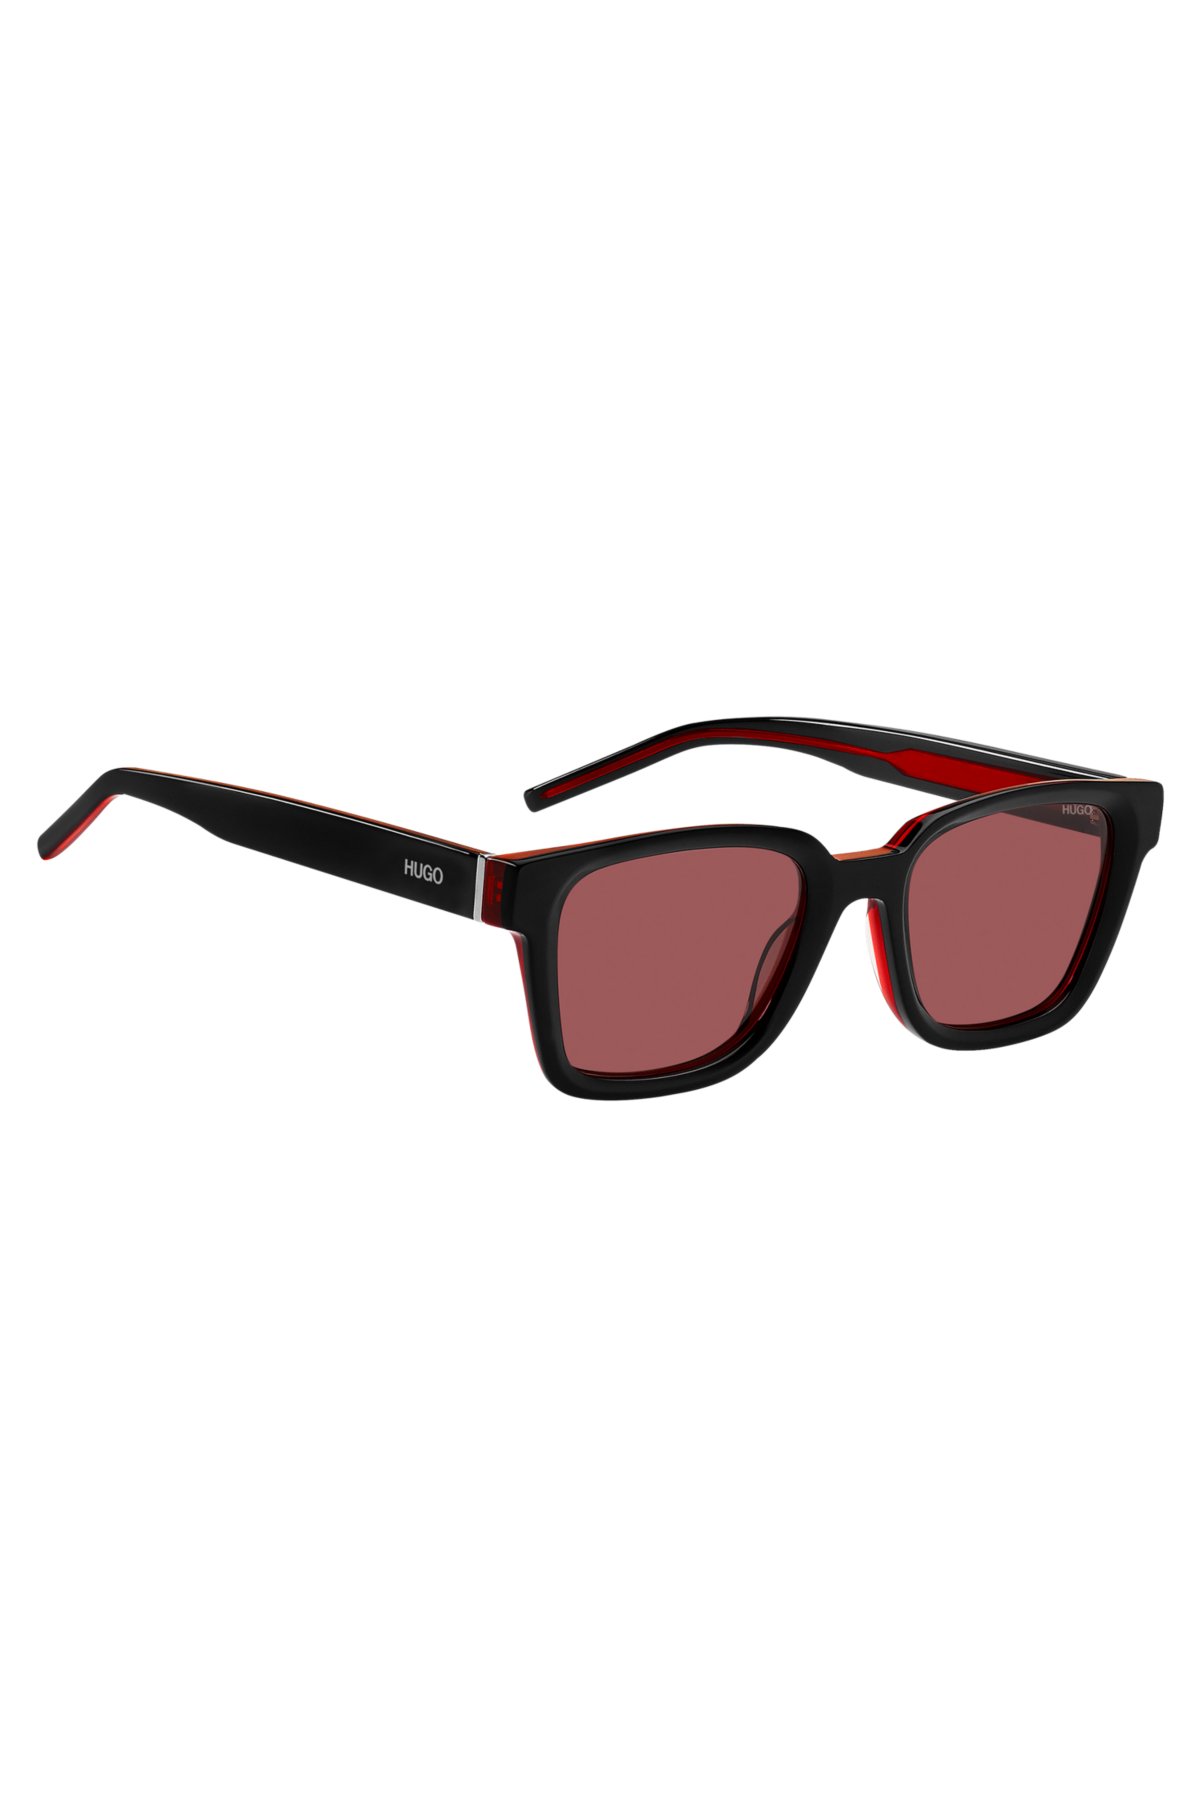 Raffaello Network on X: Fendi Sunglasses! Unique style! Bold look